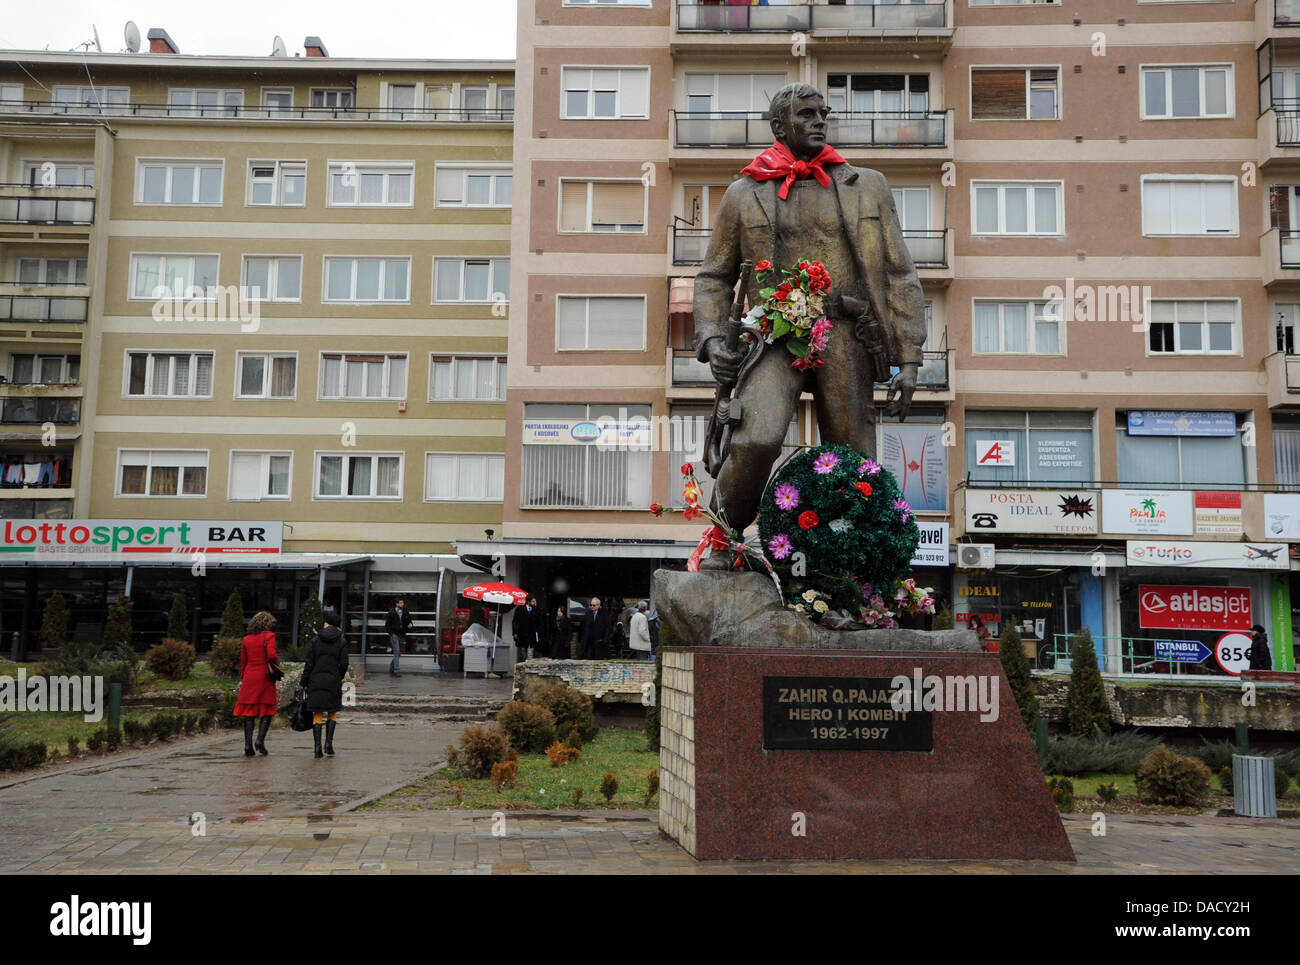 Das Denkmal für Zahir Pajaziti schmücken Blumen im Boulevard Mutter Theresa (Nena Tereza) in Pristina, Kosovo, 20. Dezember 2011. Monument war ein Kommandeur der Befreiungsarmee des Kosovo. Foto: Jens Kalaene Stockfoto